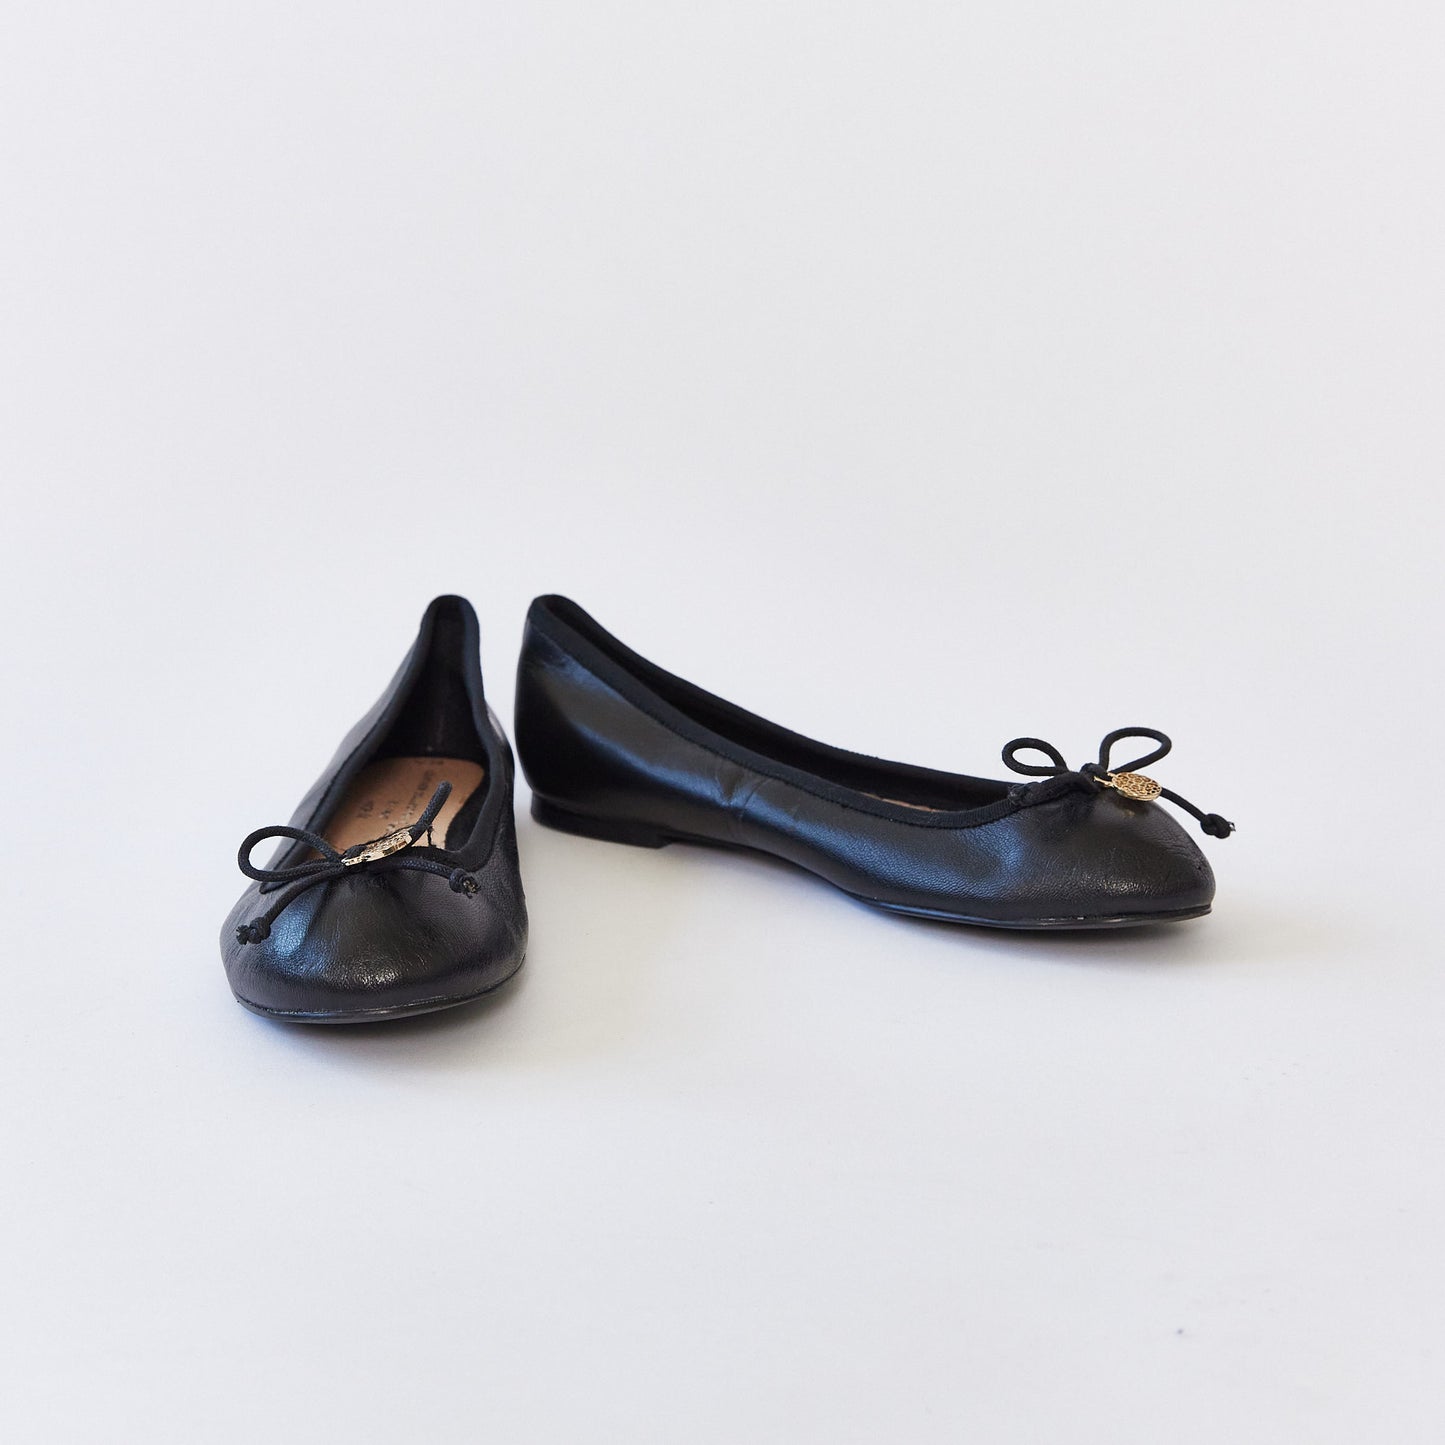 Black leather ballet pump size 5